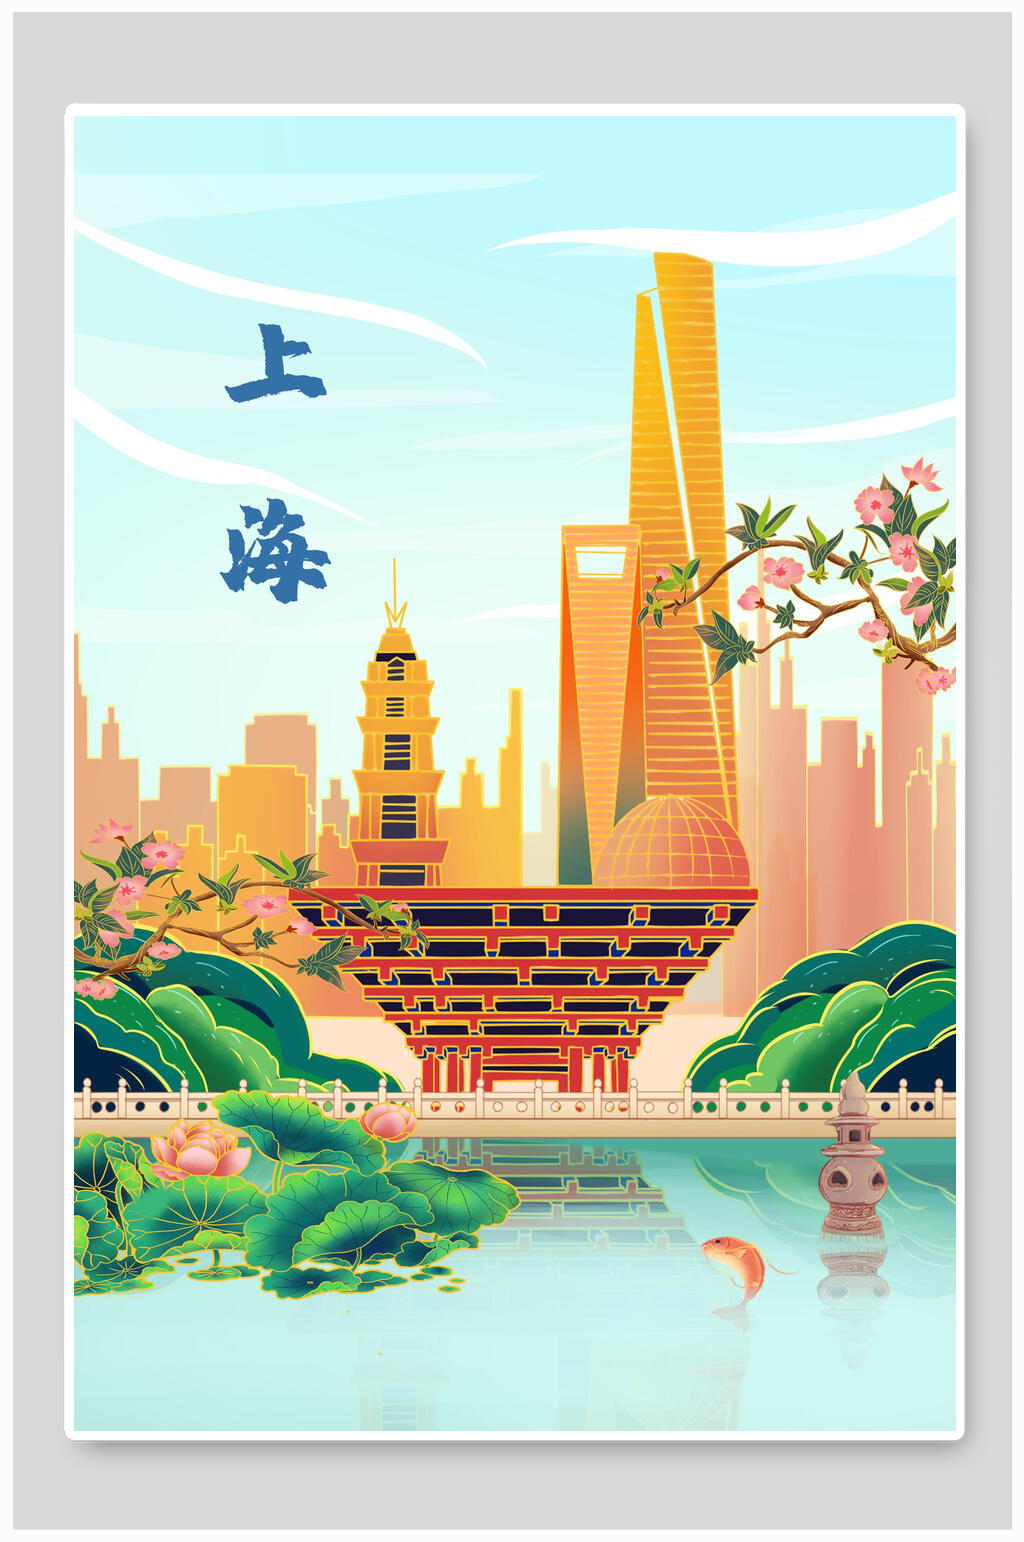 国际进口博览会上海进博会中国上海地标建筑简约手绘城市印象插画上海